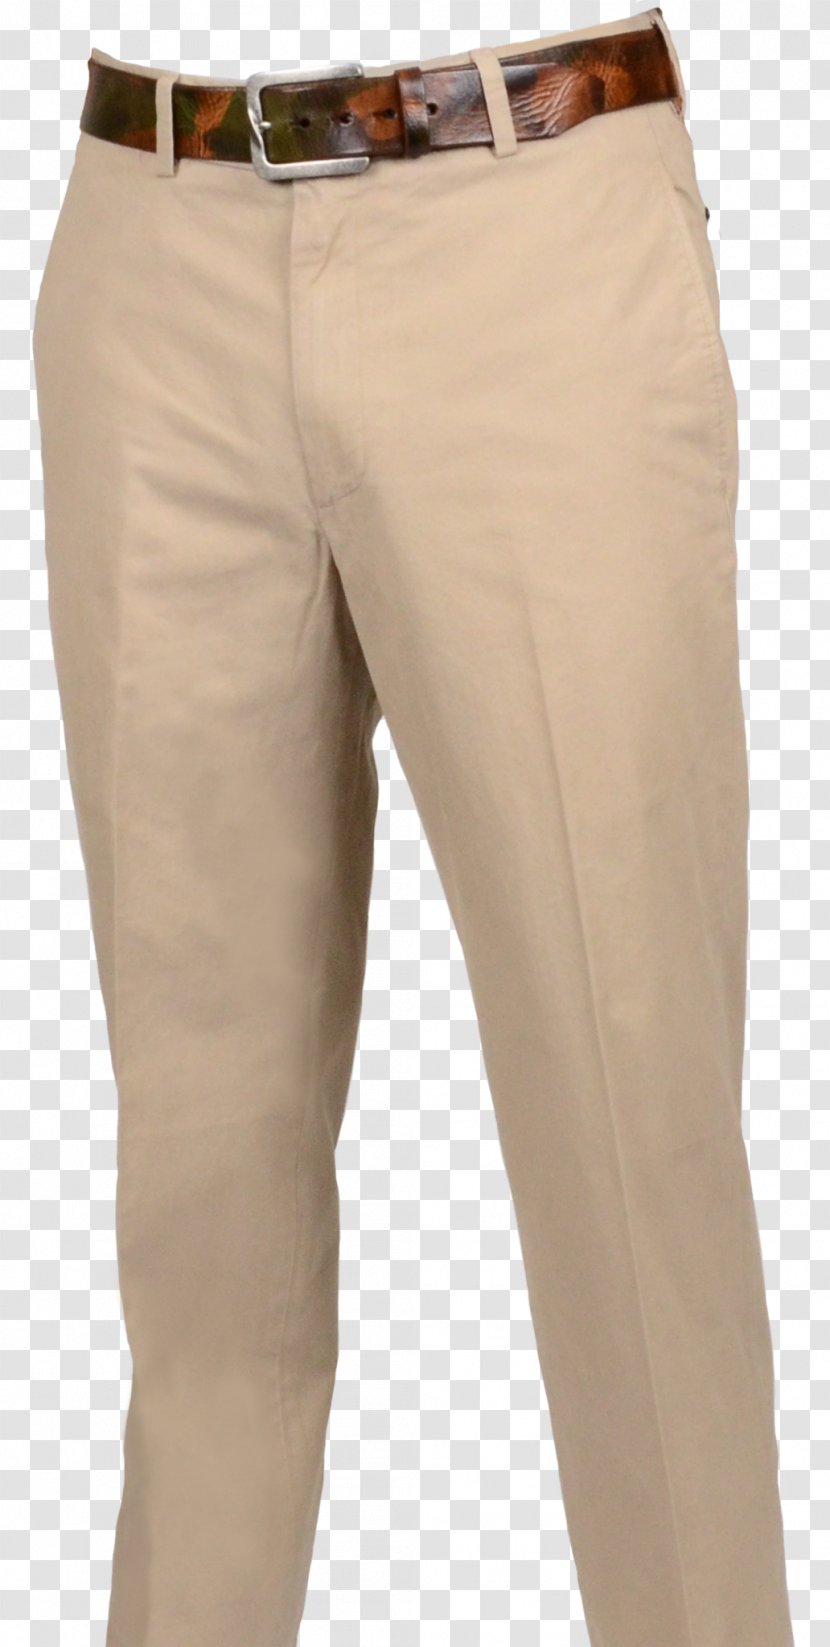 Khaki Pants Clothing Dress Tan - Suit - Lines Transparent PNG